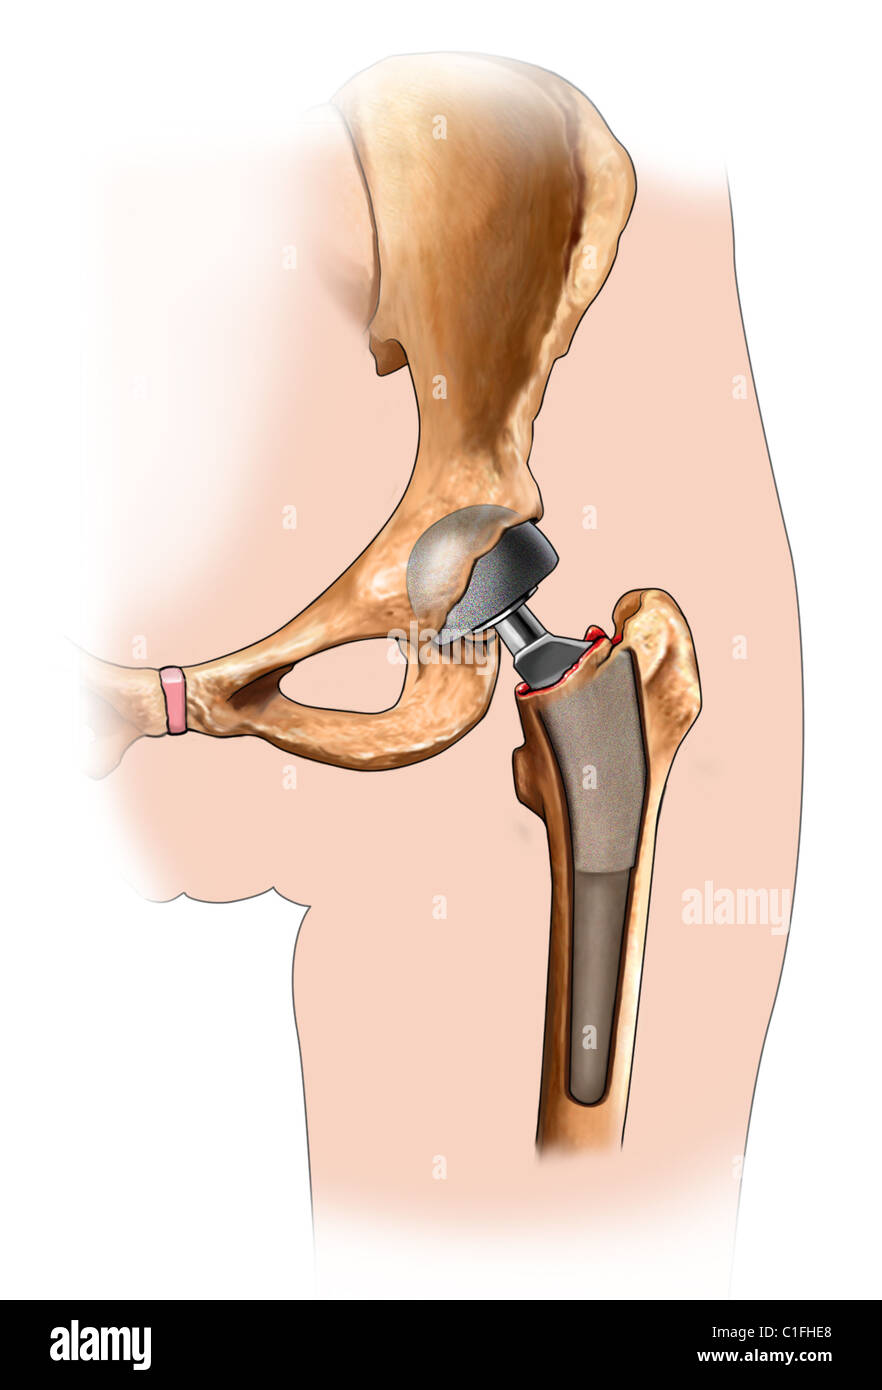 Esta ilustración médica ilustra la prótesis en su lugar durante un procedimiento de reemplazo de cadera. Foto de stock